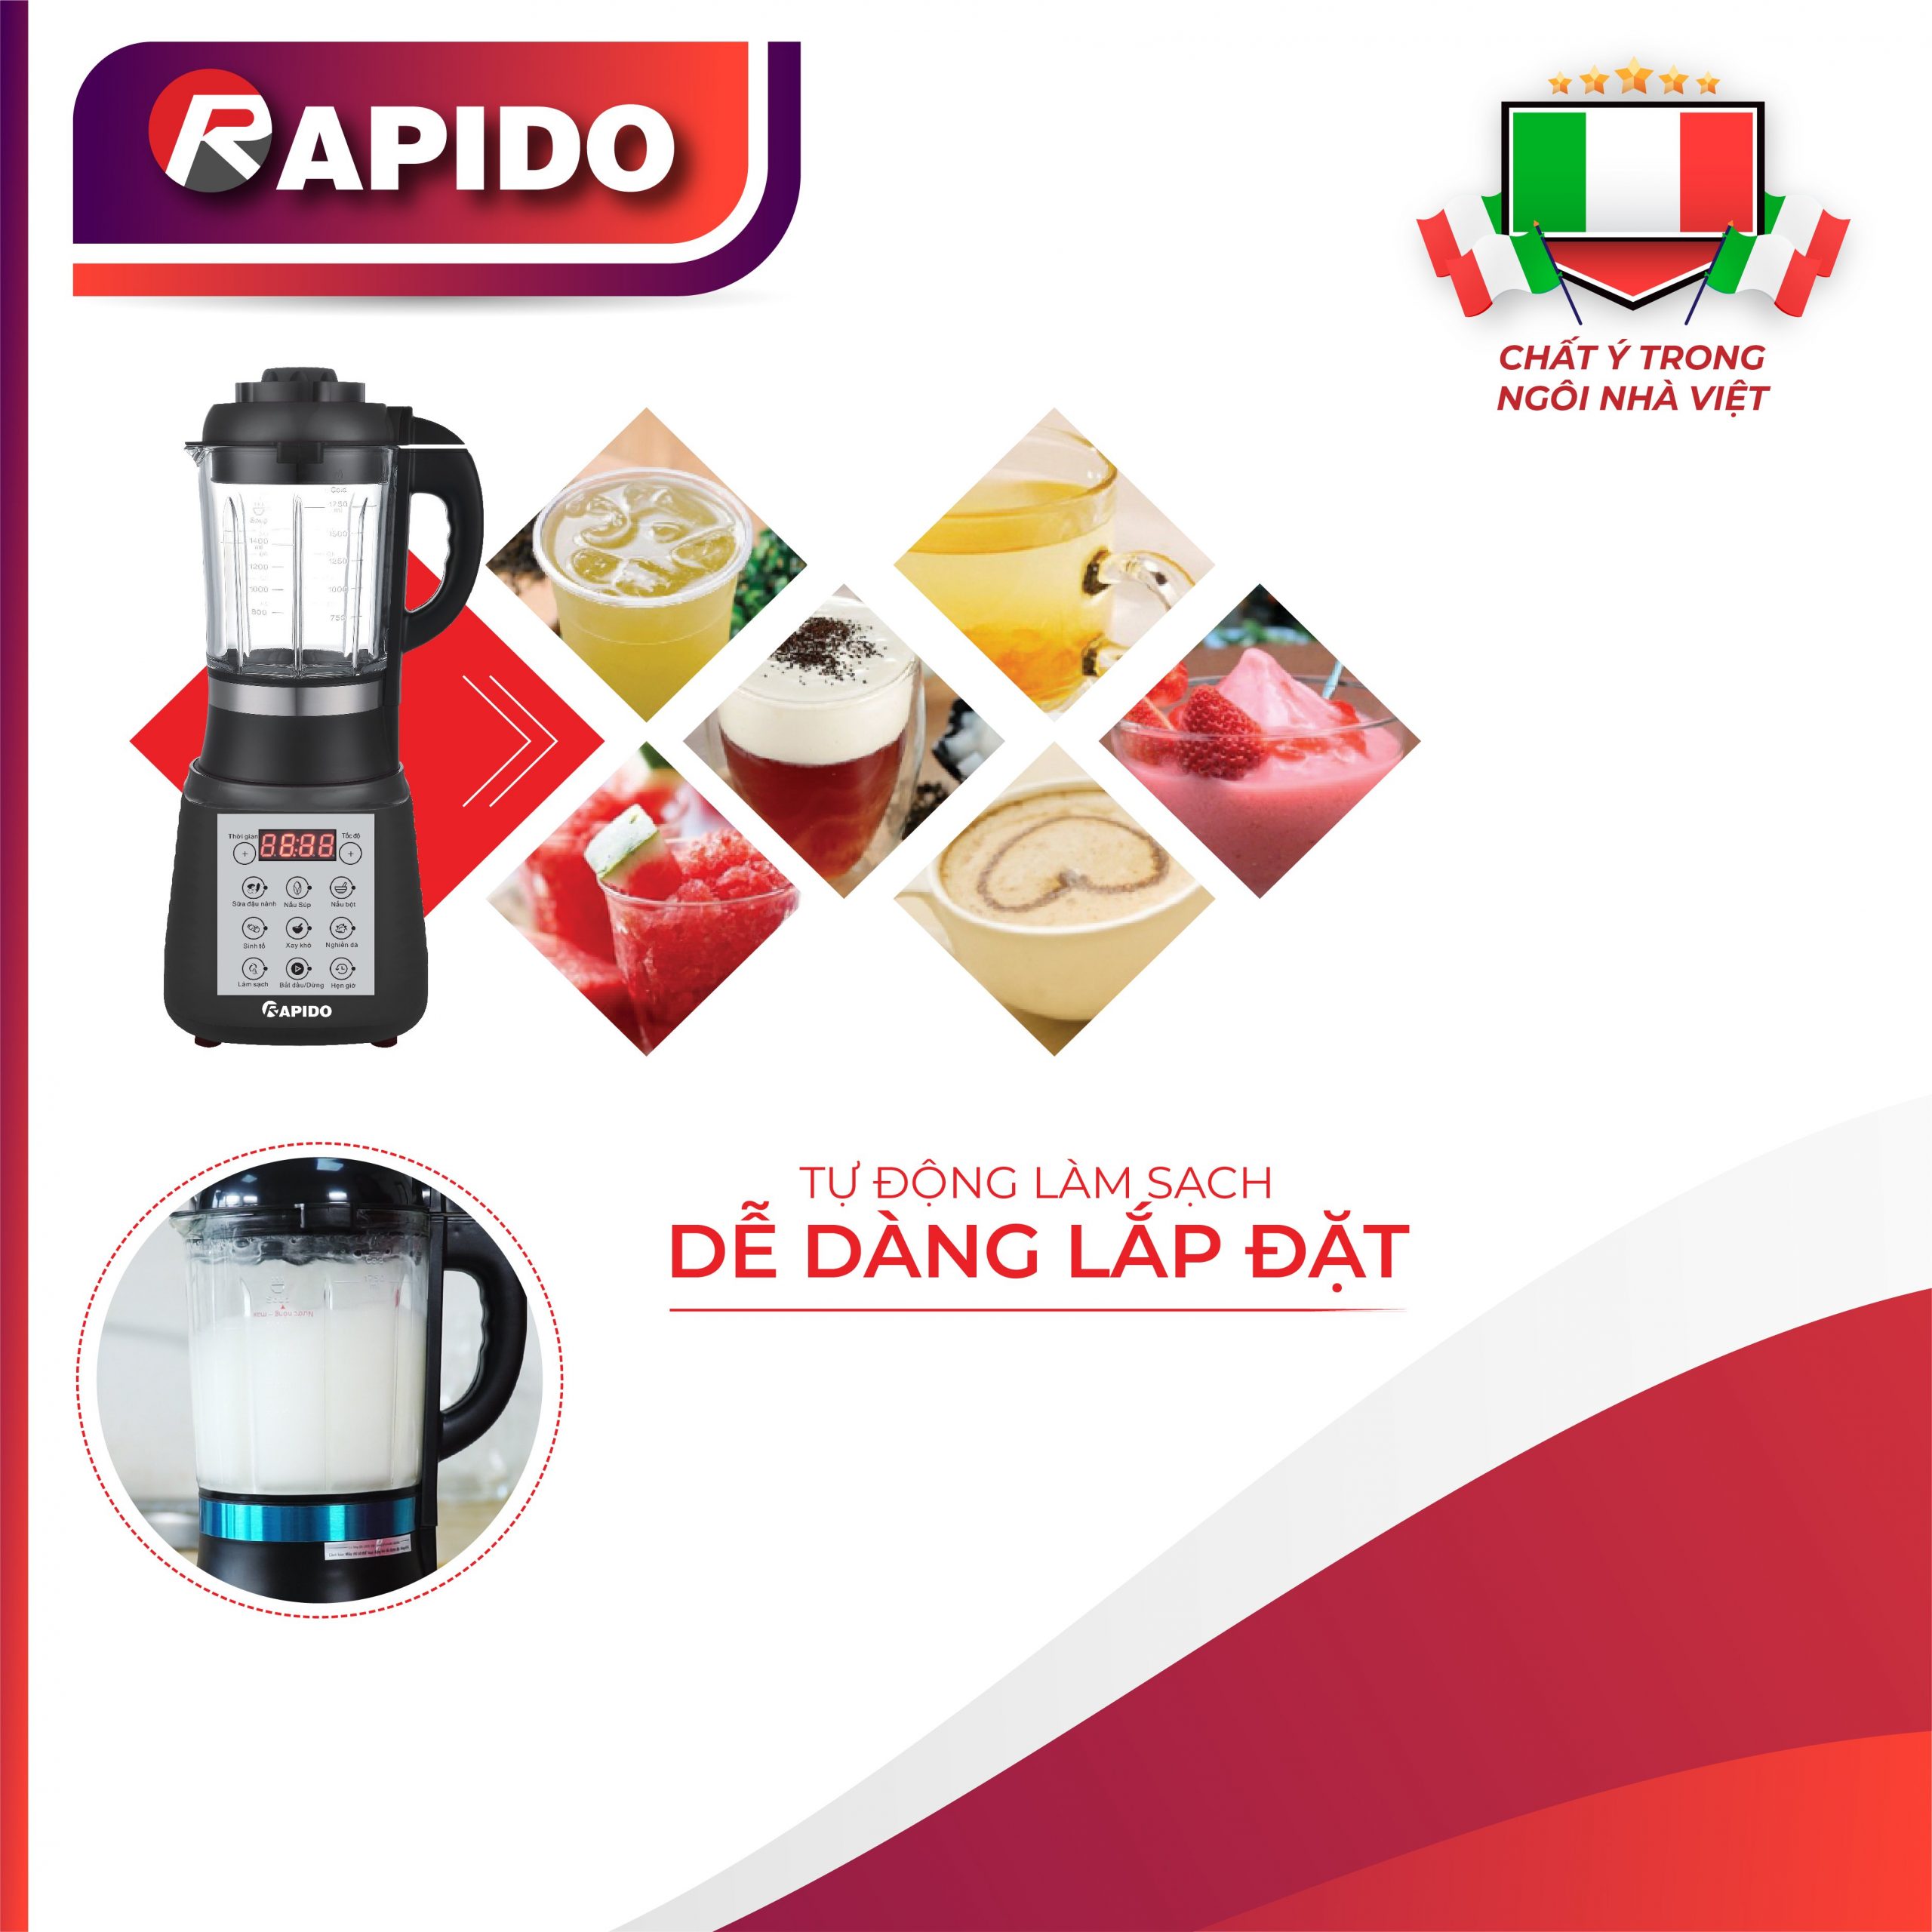 Máy làm sữa hạt Rapido rất tiện dụng để làm những món ăn ngon.